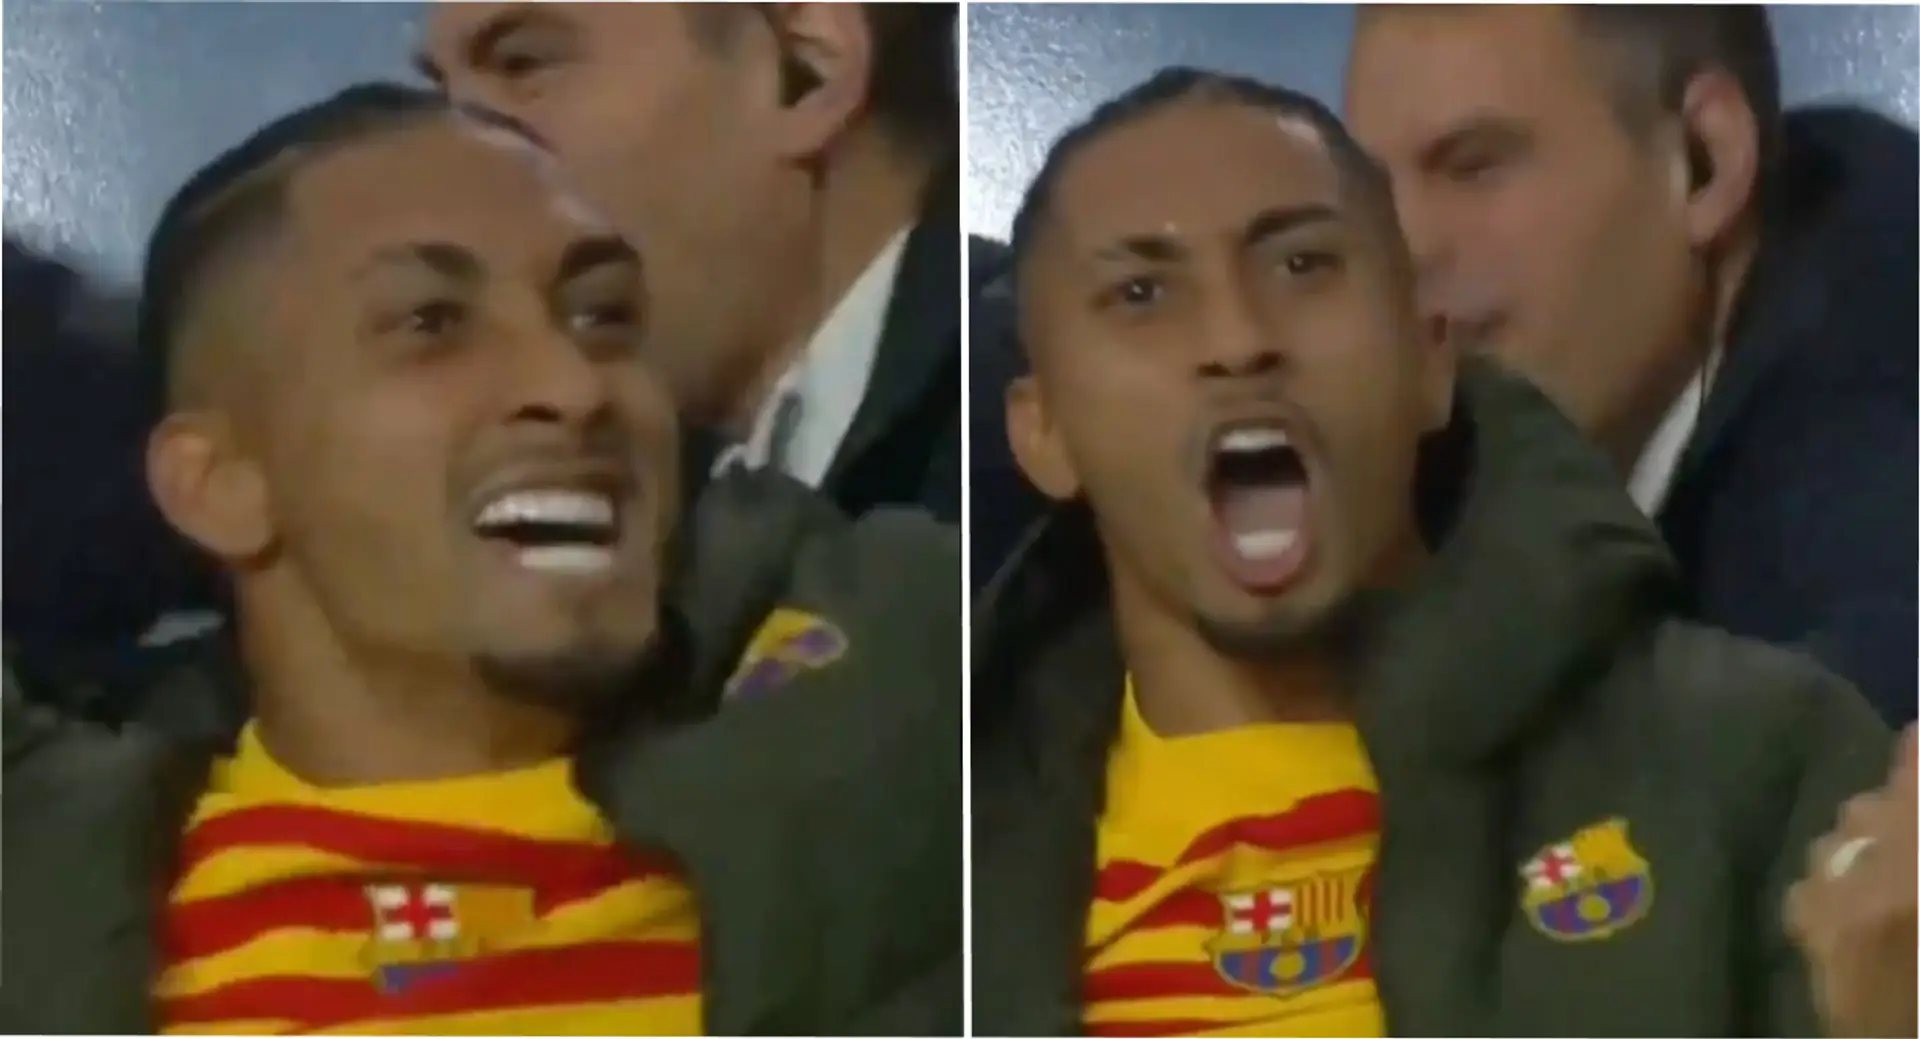 Des images de Raphinha célébrant le but du Barça contre le PSG font surface – cet homme a les Blaugrana dans le sang